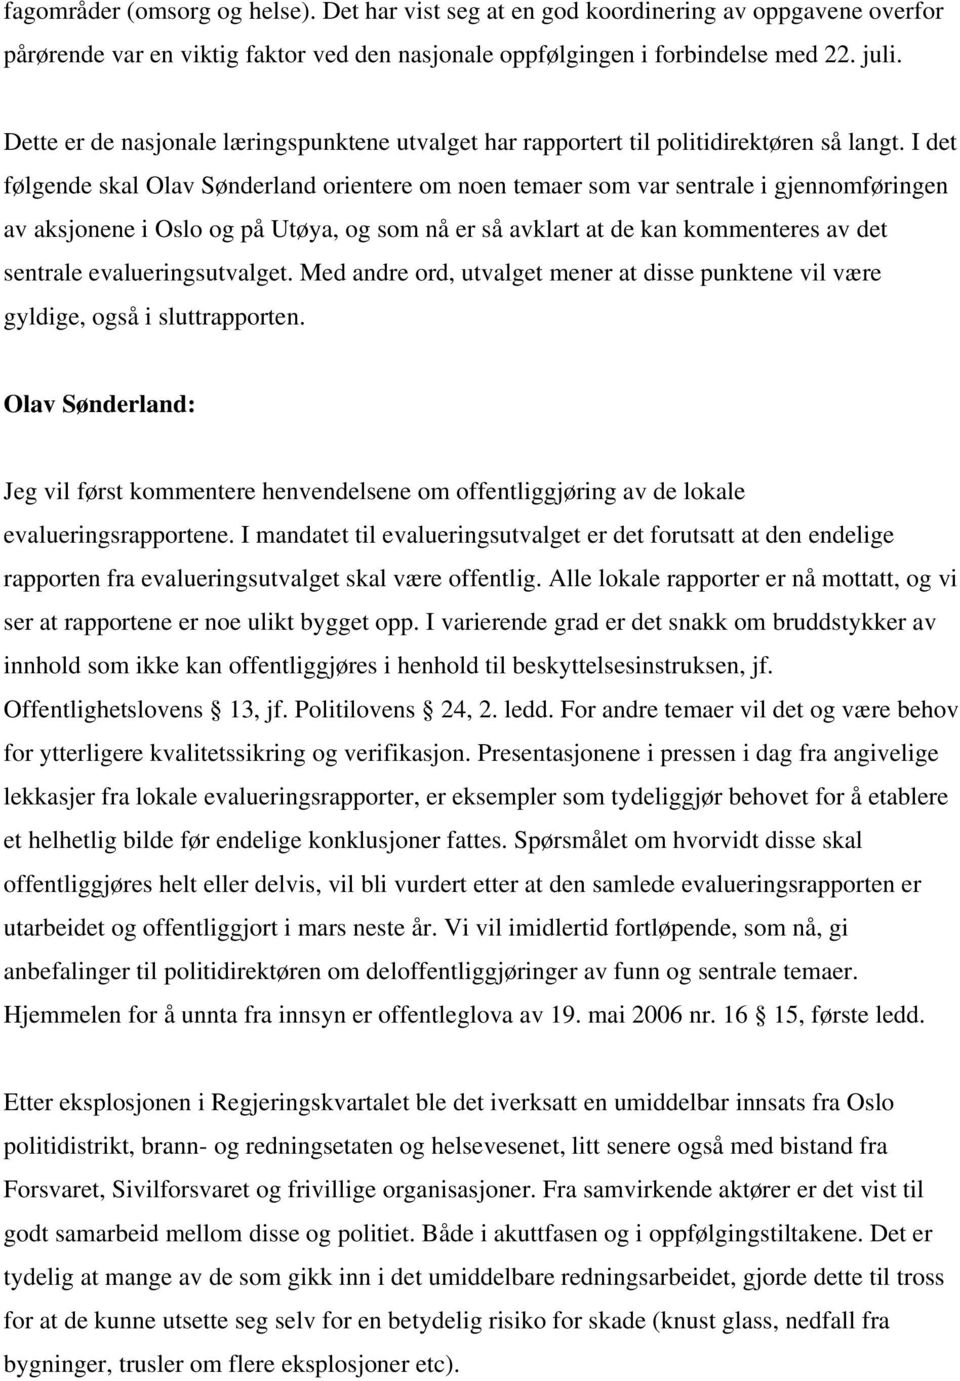 I det følgende skal Olav Sønderland orientere om noen temaer som var sentrale i gjennomføringen av aksjonene i Oslo og på Utøya, og som nå er så avklart at de kan kommenteres av det sentrale